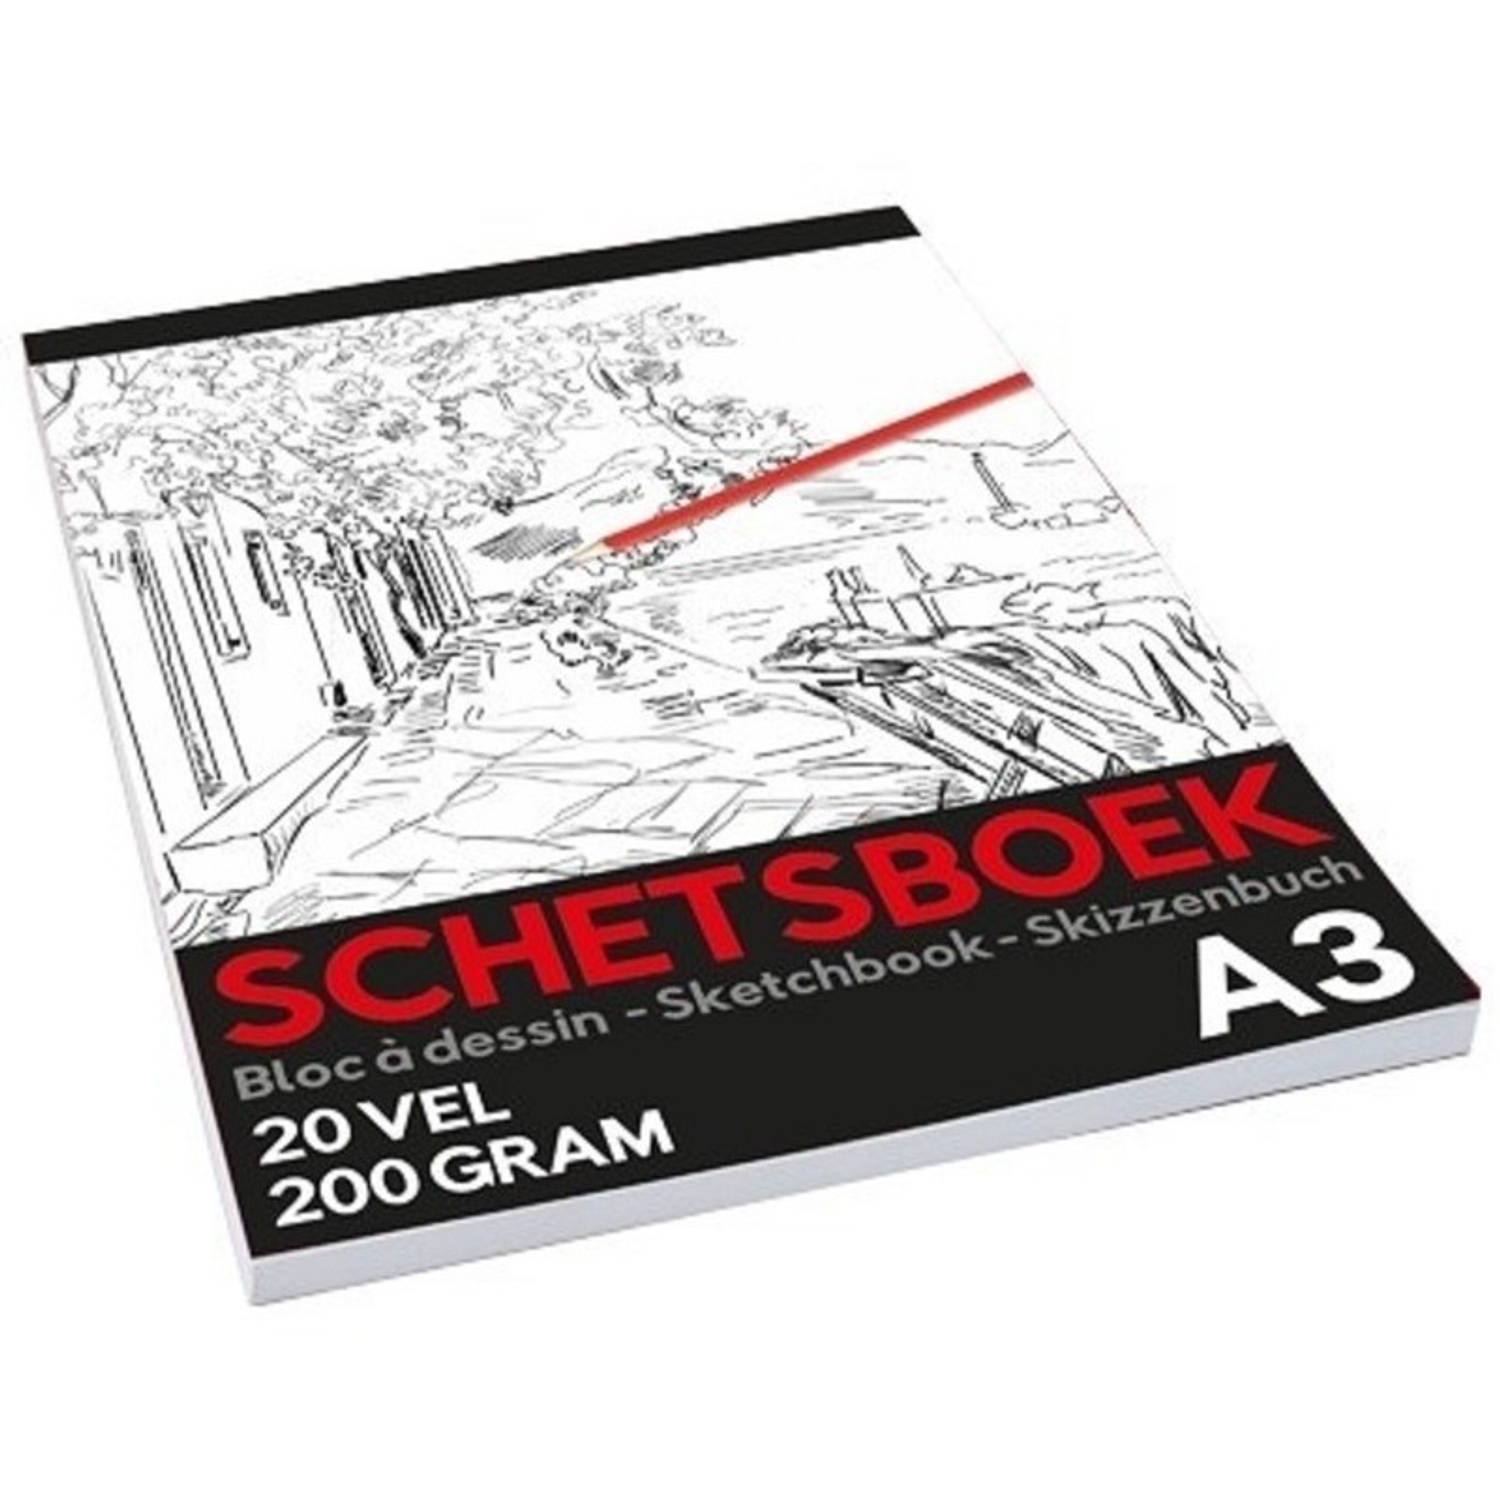 Schetsboek-tekenboek A3 Formaat Schoolartikelen-kantoorartikelen-schilderartikelen Schetsboeken-teke